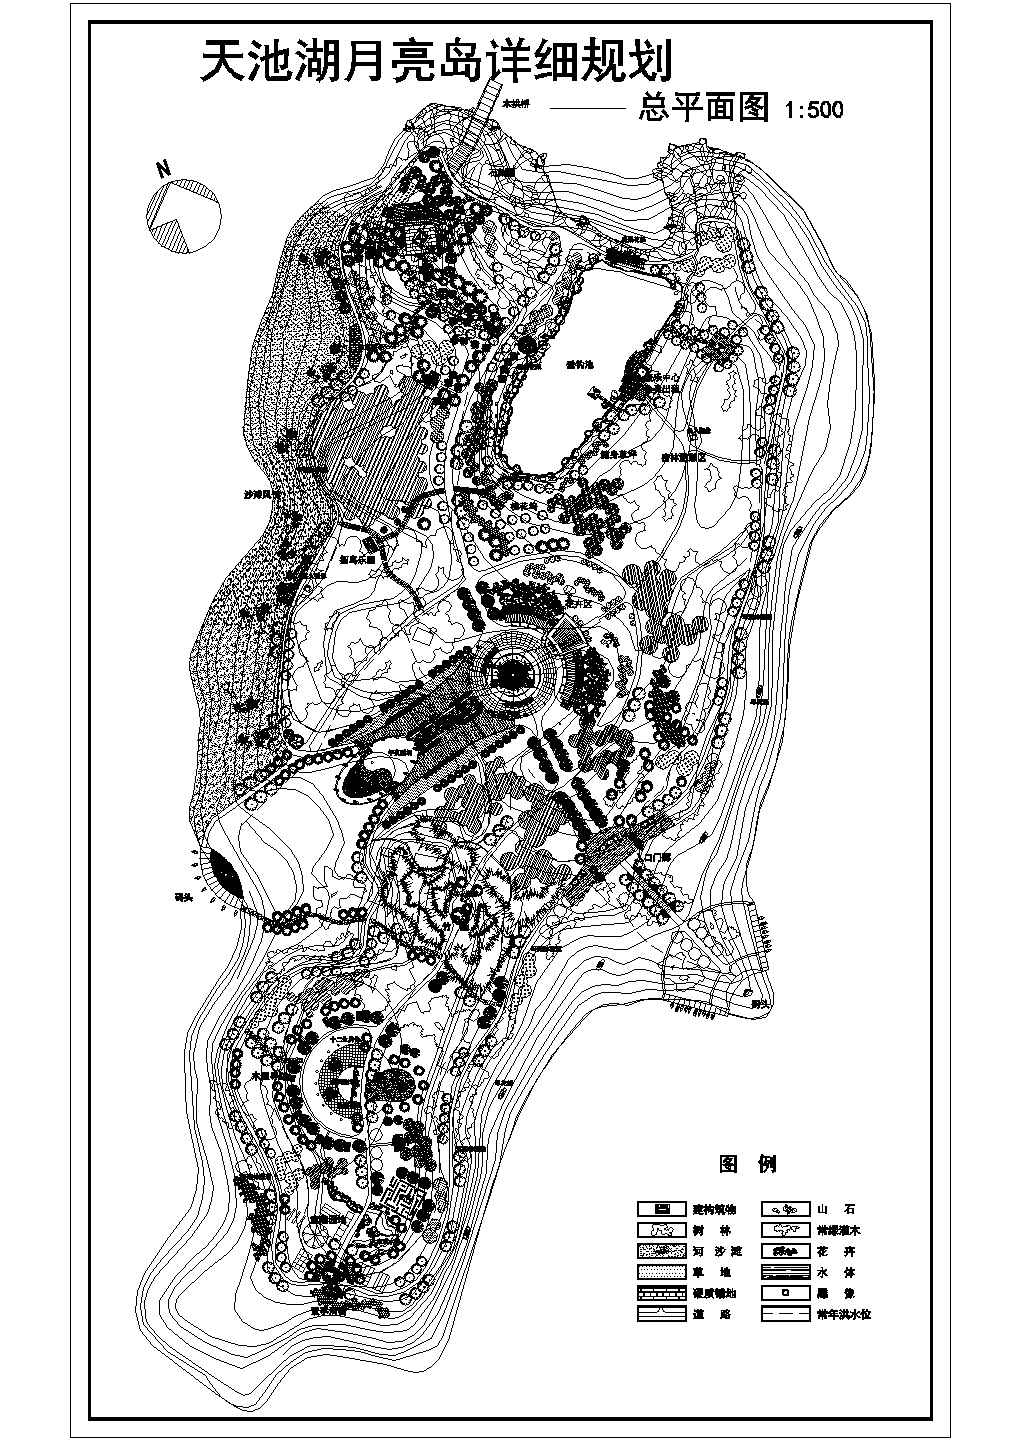 天池湖月亮岛公园设计施工图